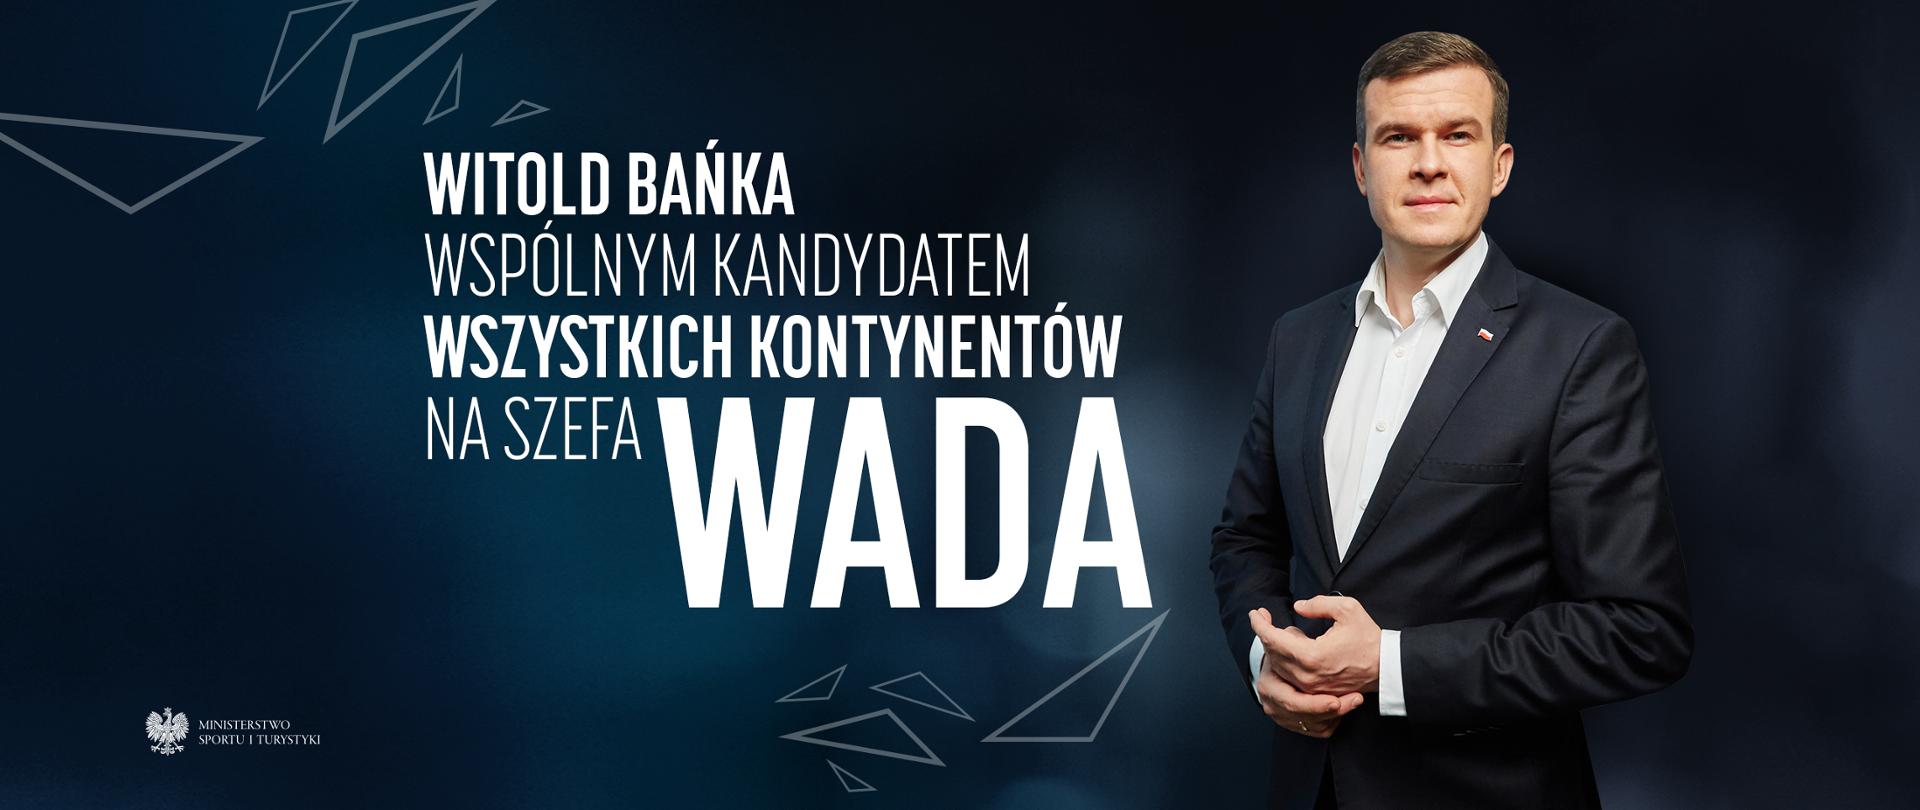 Światowe władze wybrały! Minister Witold Bańka wspólnym kandydatem wszystkich kontynentów na szefa WADA